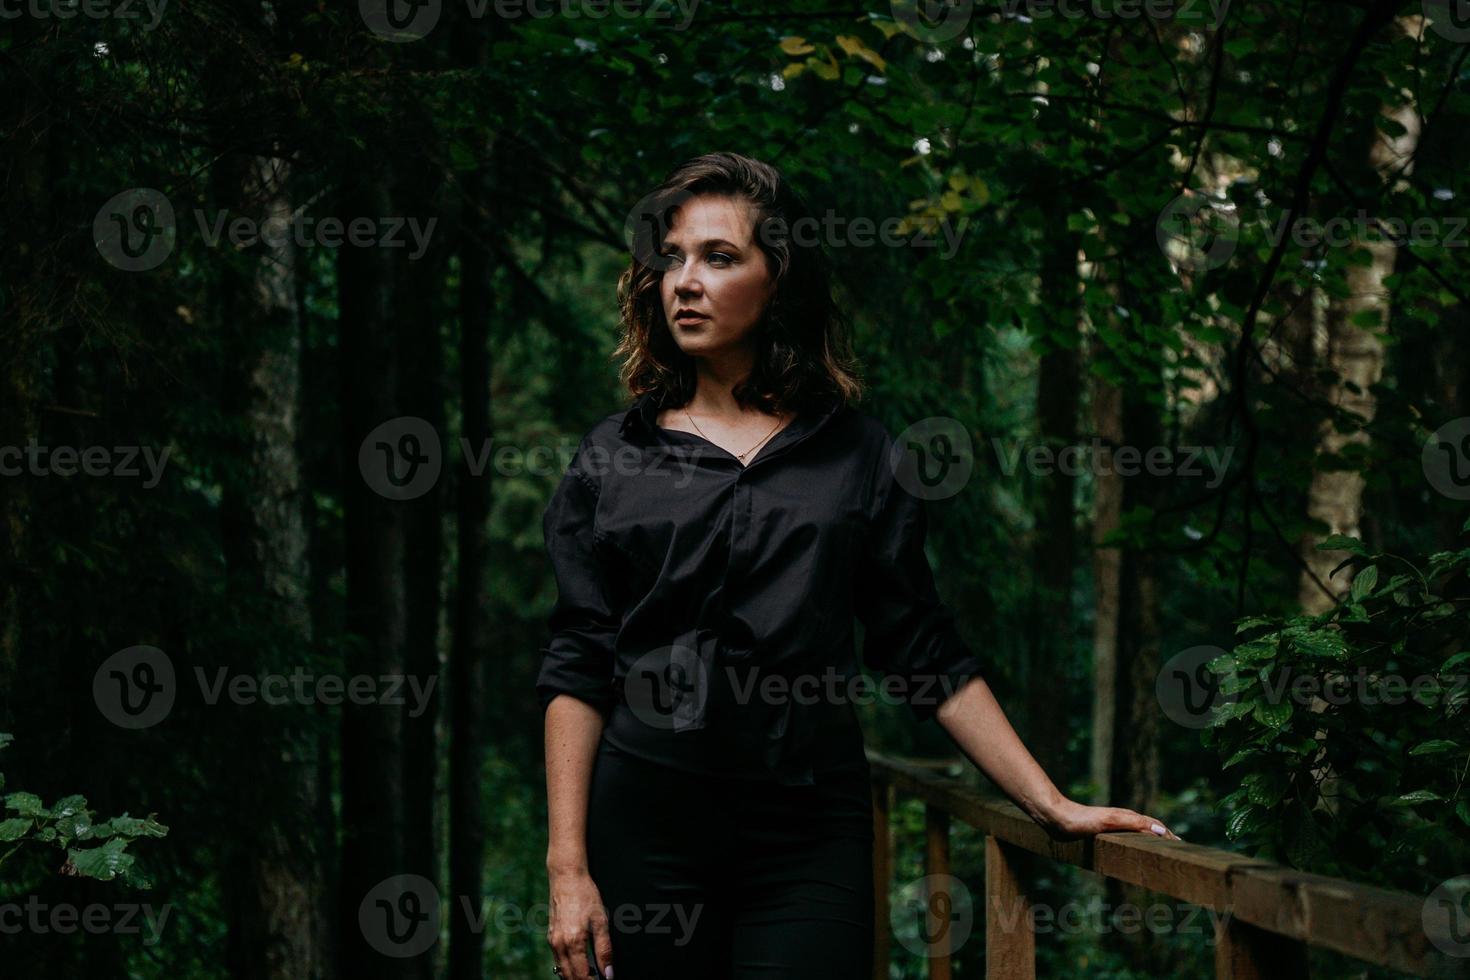 mujer joven - retrato cercano en un bosque oscuro. mujer en camisa negra foto